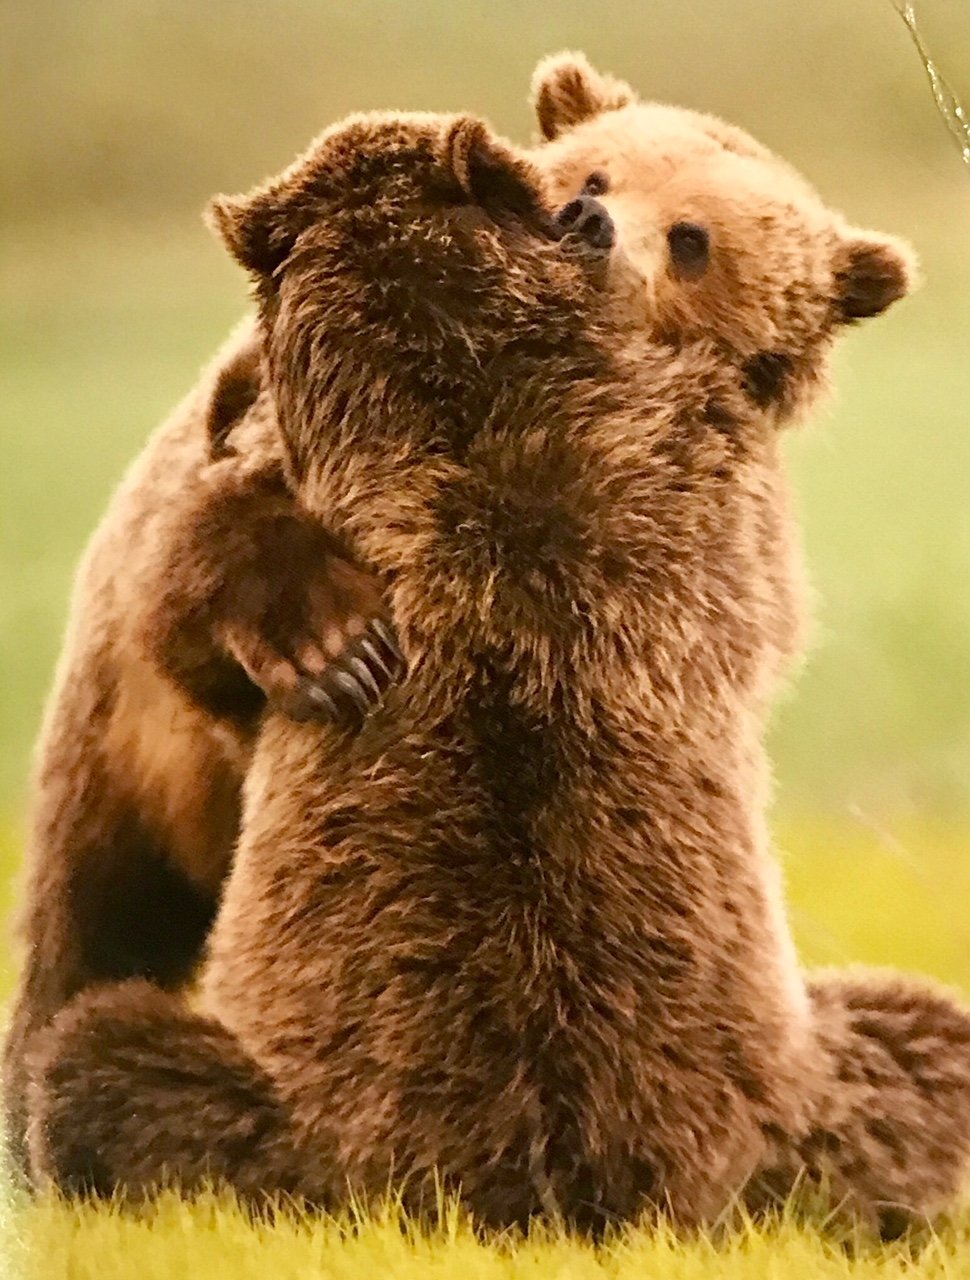 Медвежата обнимаются